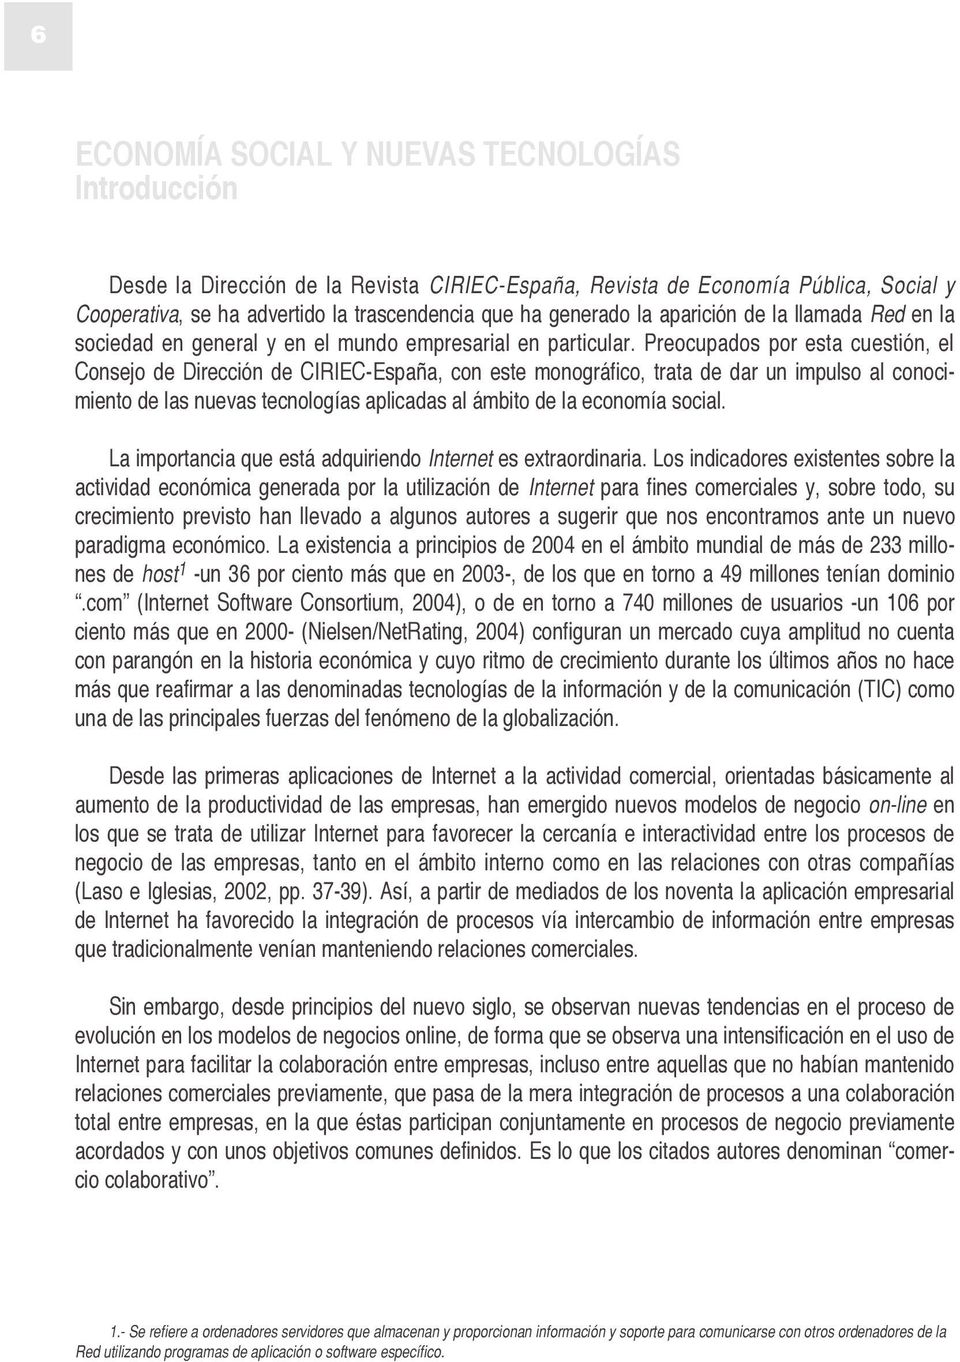 Preocupados por esta cuestión, el Consejo de Dirección de CIRIEC-España, con este monográfico, trata de dar un impulso al conocimiento de las nuevas tecnologías aplicadas al ámbito de la economía